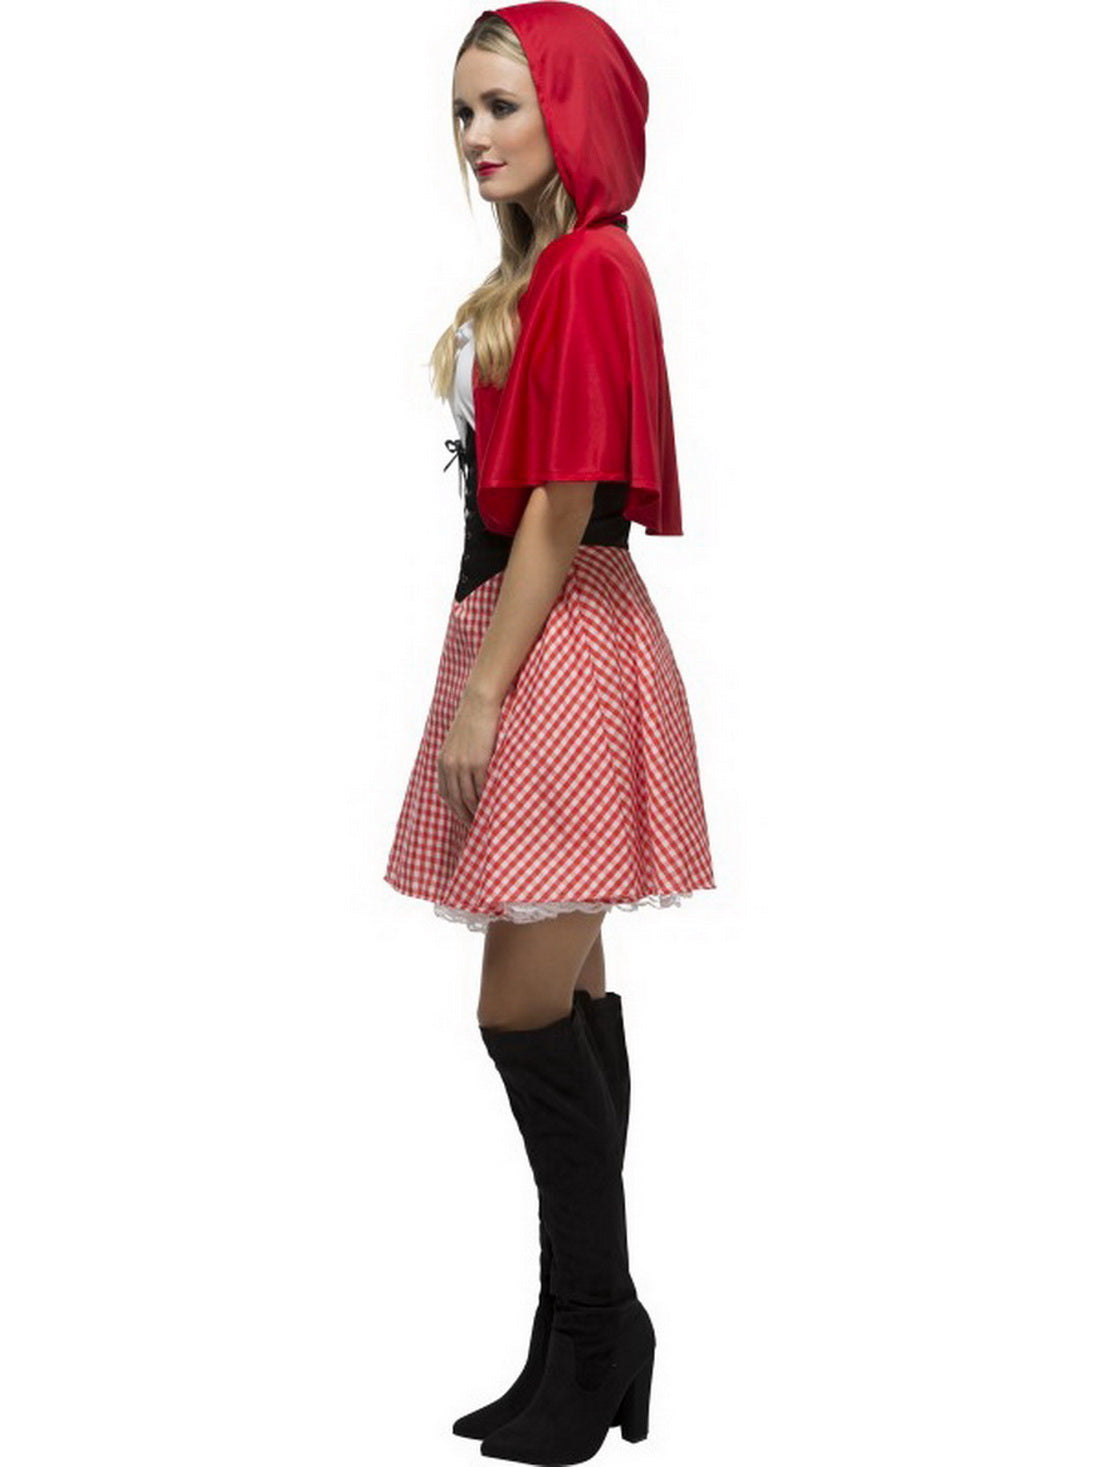 Damen Frauen Rotkäppchen Kostüm mit kurzem Kleid und Umhang mit Kapuze, perfekt für Karneval, Fasching und Fastnacht, S, Rot